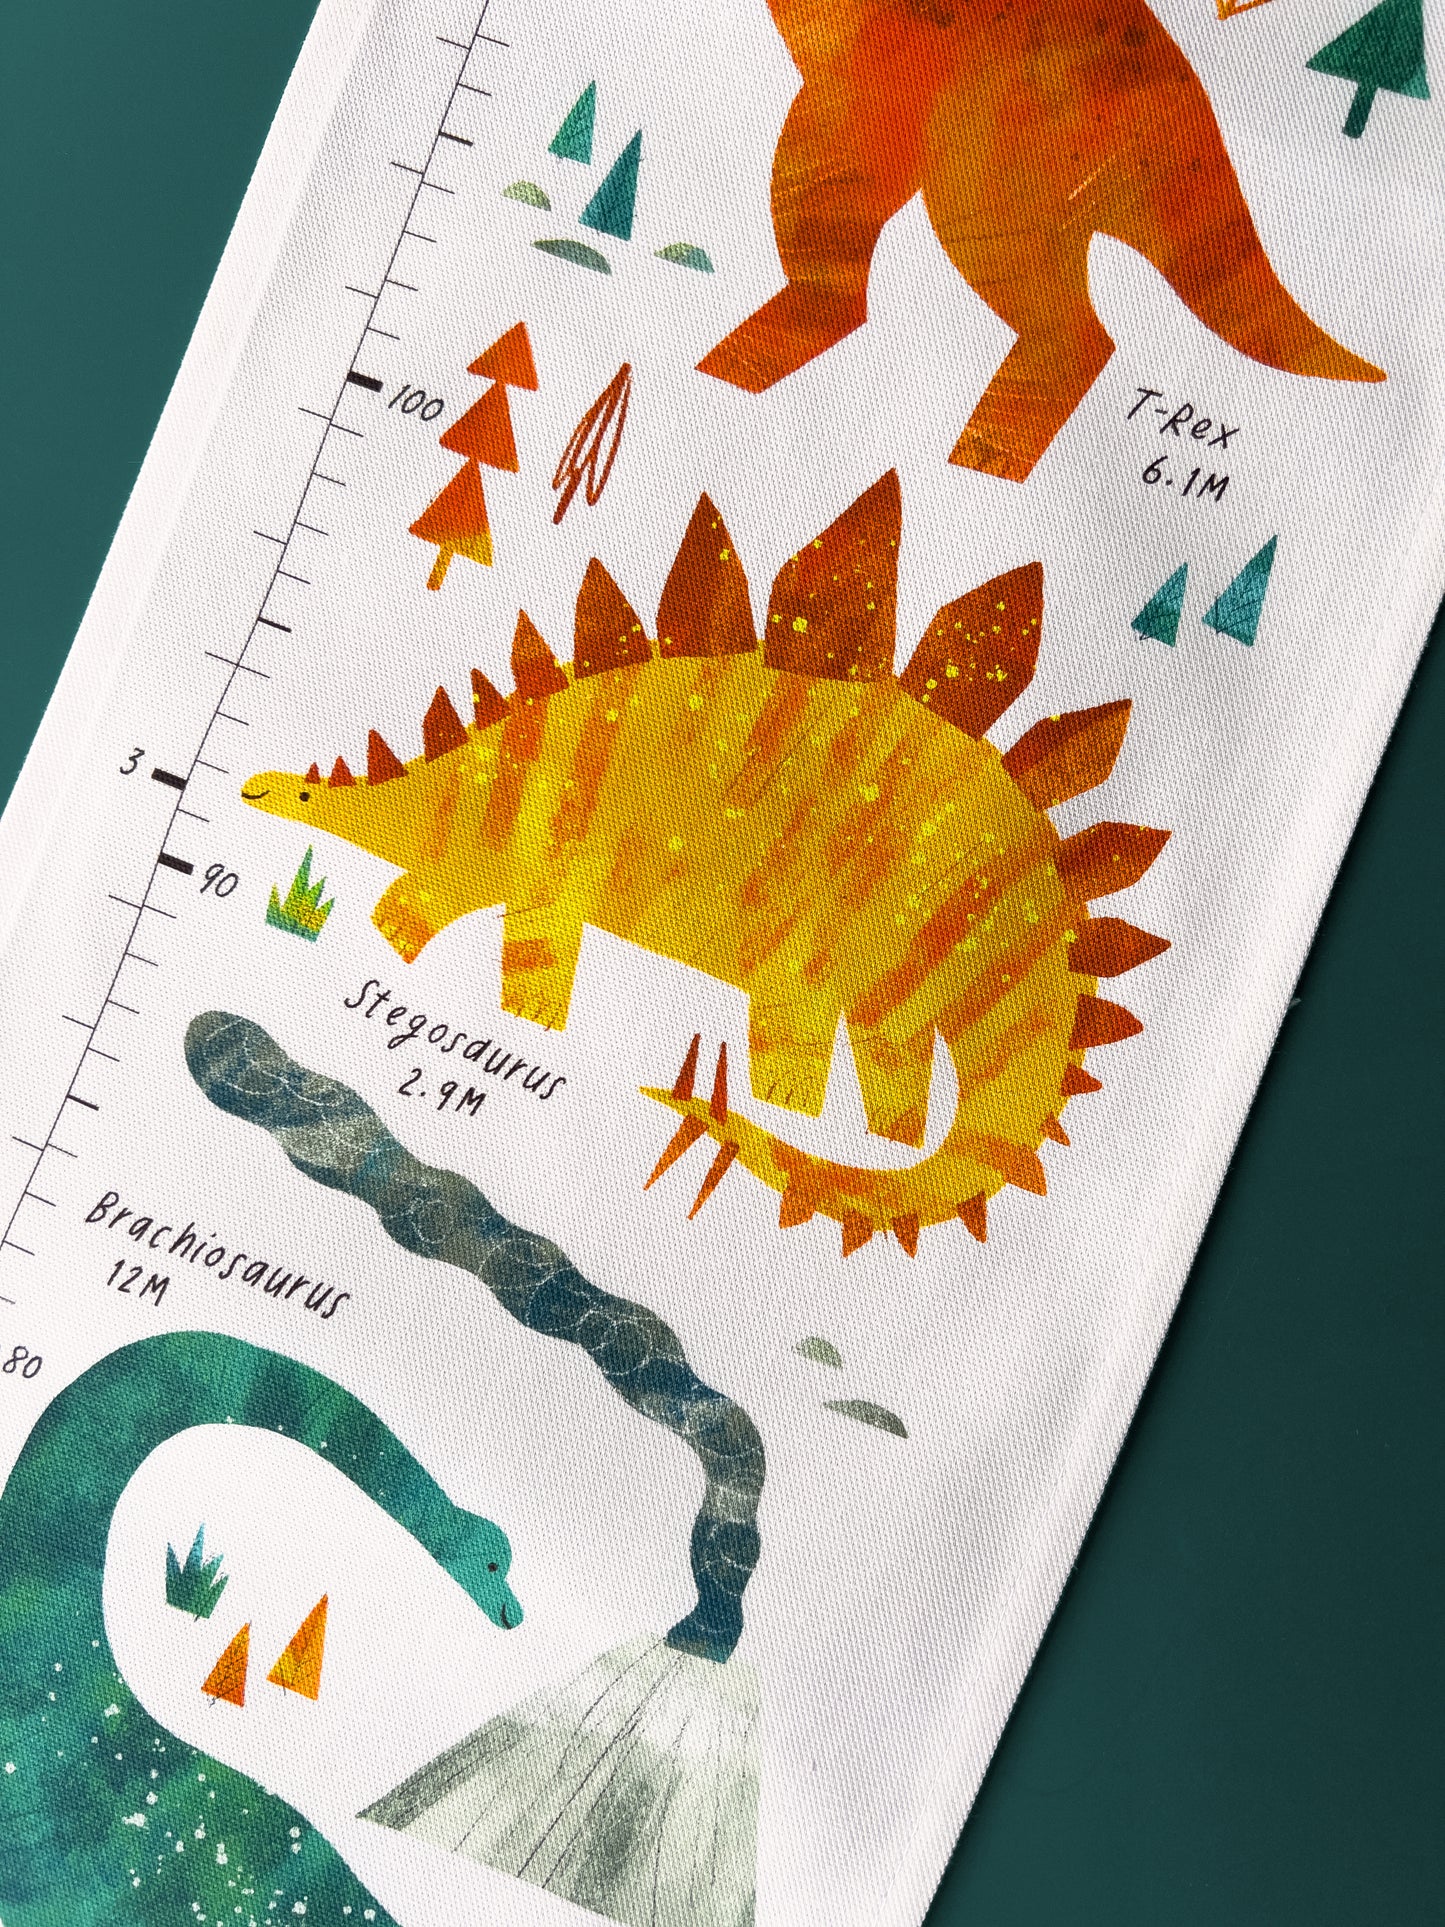 Dinosaur Children's Fabric Height Chart